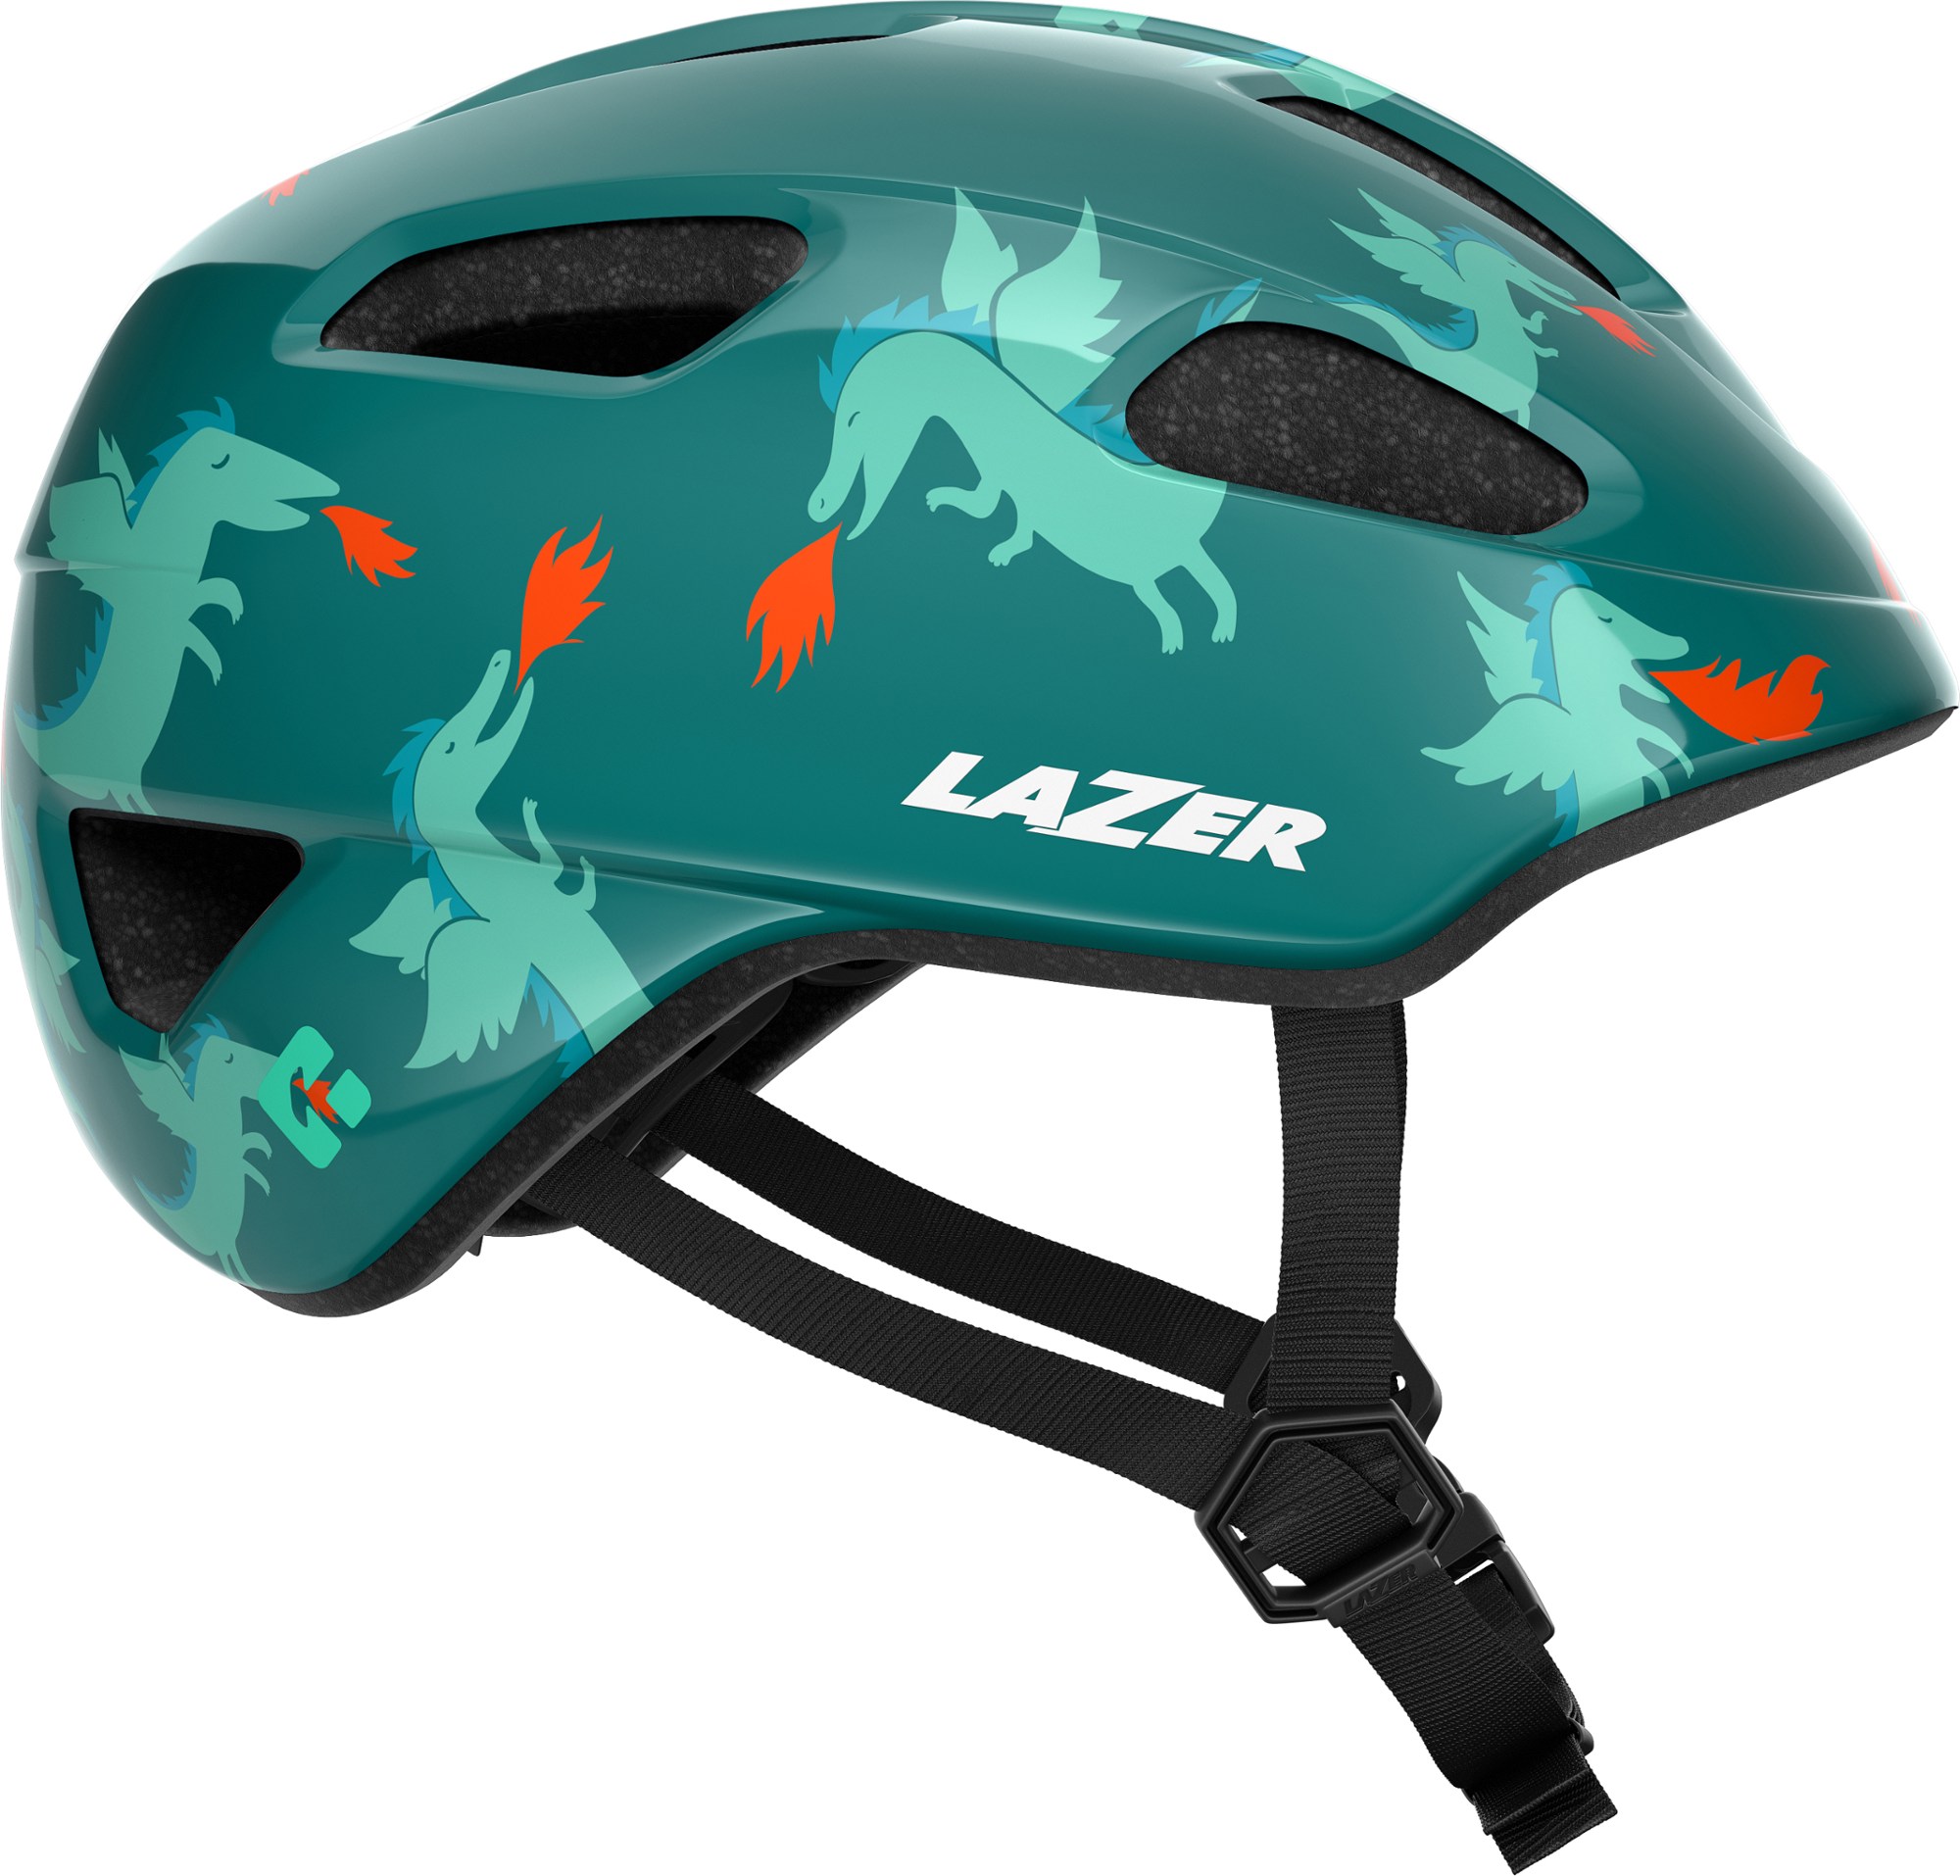 цена Велосипедный шлем Nutz KinetiCore — детский Lazer, зеленый